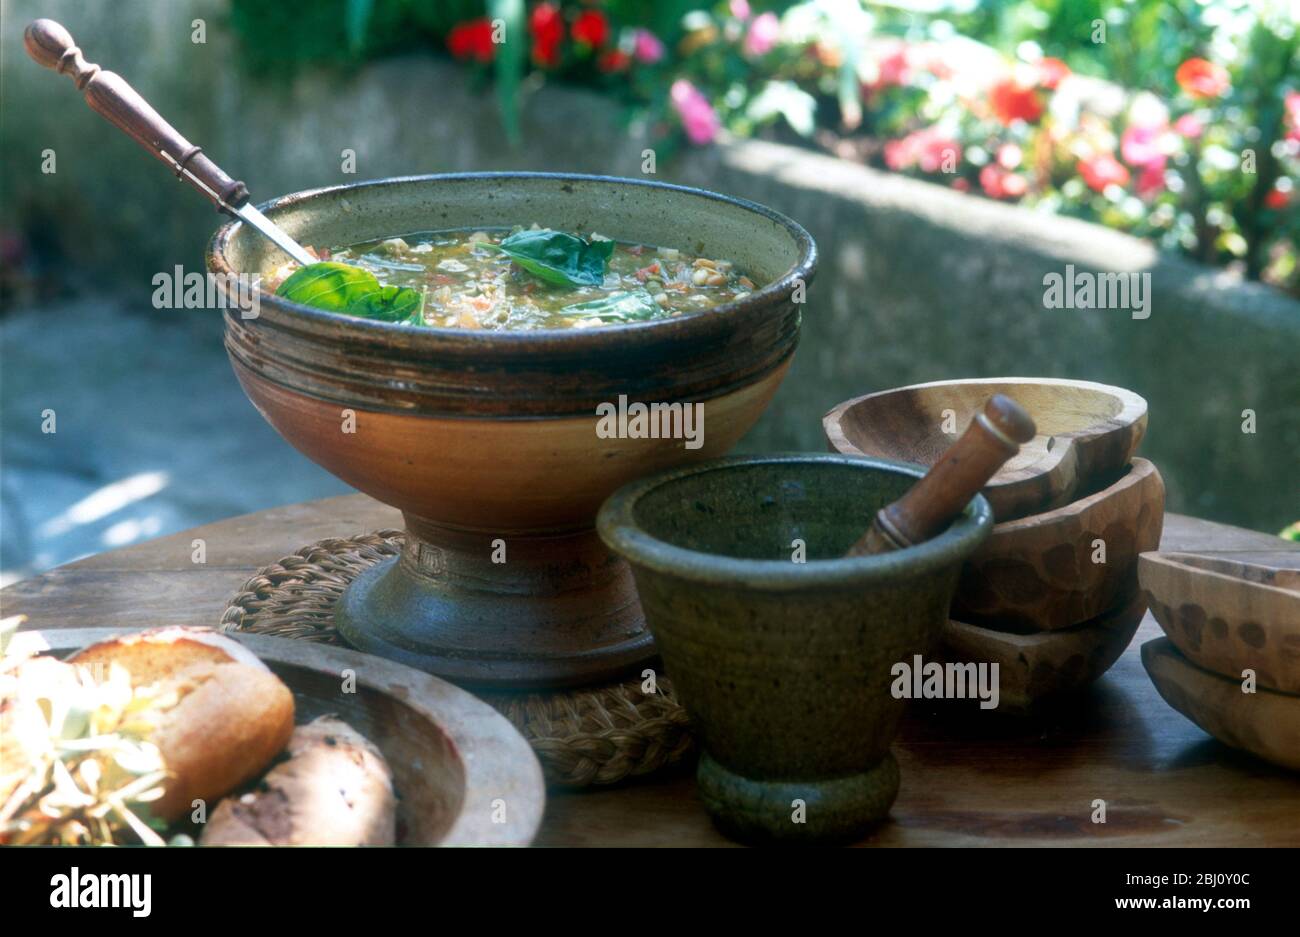 Leichte Gemüsesuppe mit Pesto in Suppenschüssel mit Schalen, Brot und Pesto im Pestel mit Mörser - Stockfoto